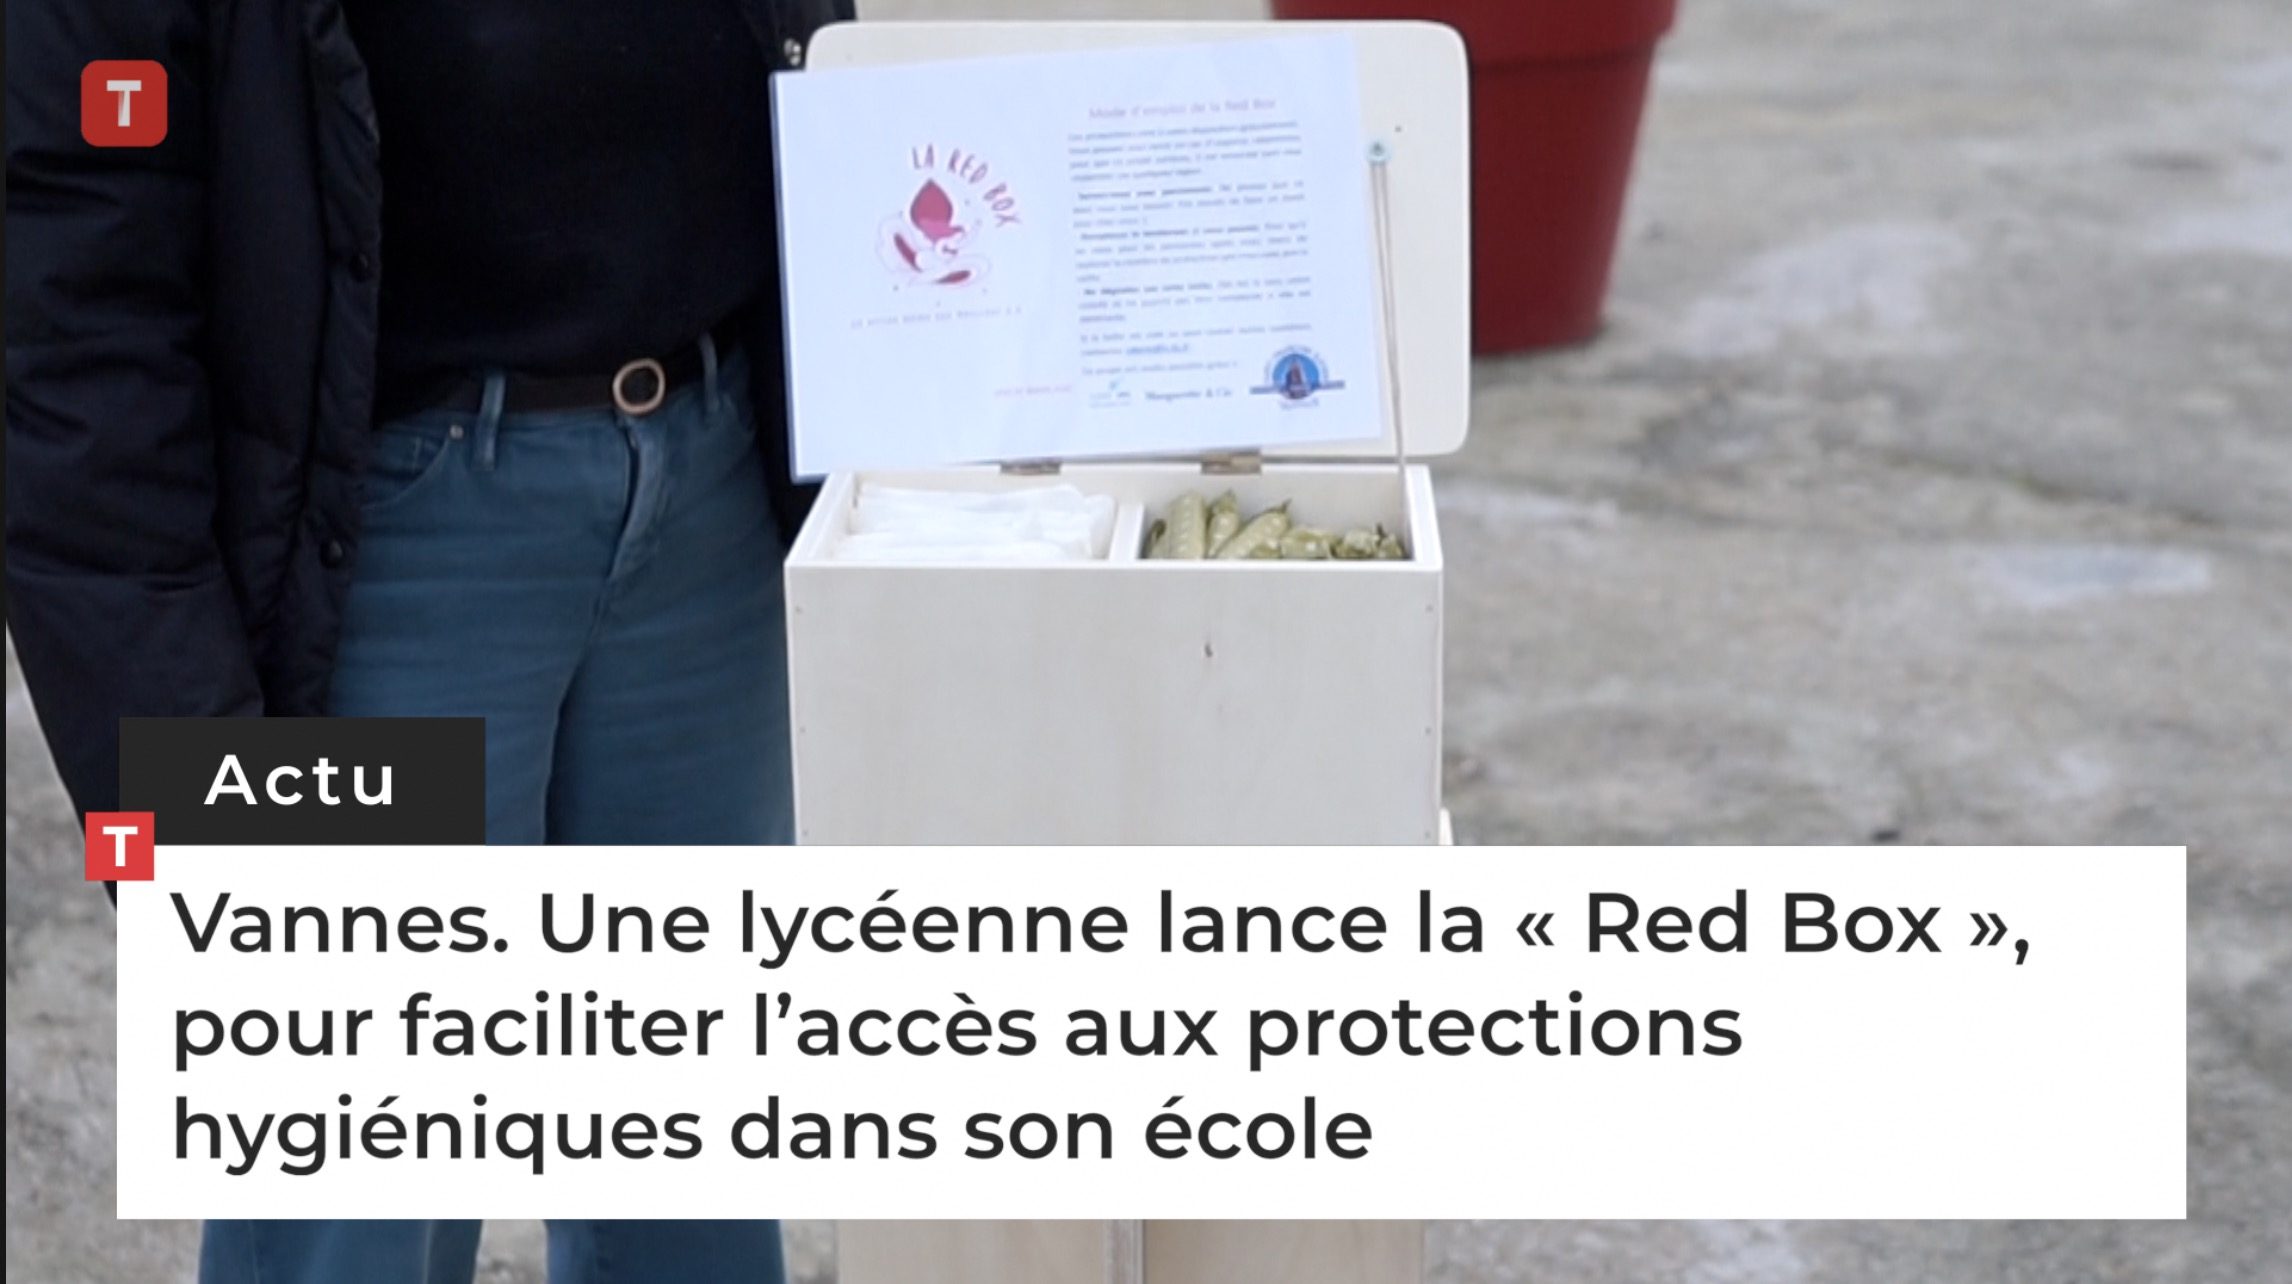 Vannes. Une lycéenne lance la « Red Box », pour faciliter l’accès aux protections hygiéniques dans son école (Le Télégramme)